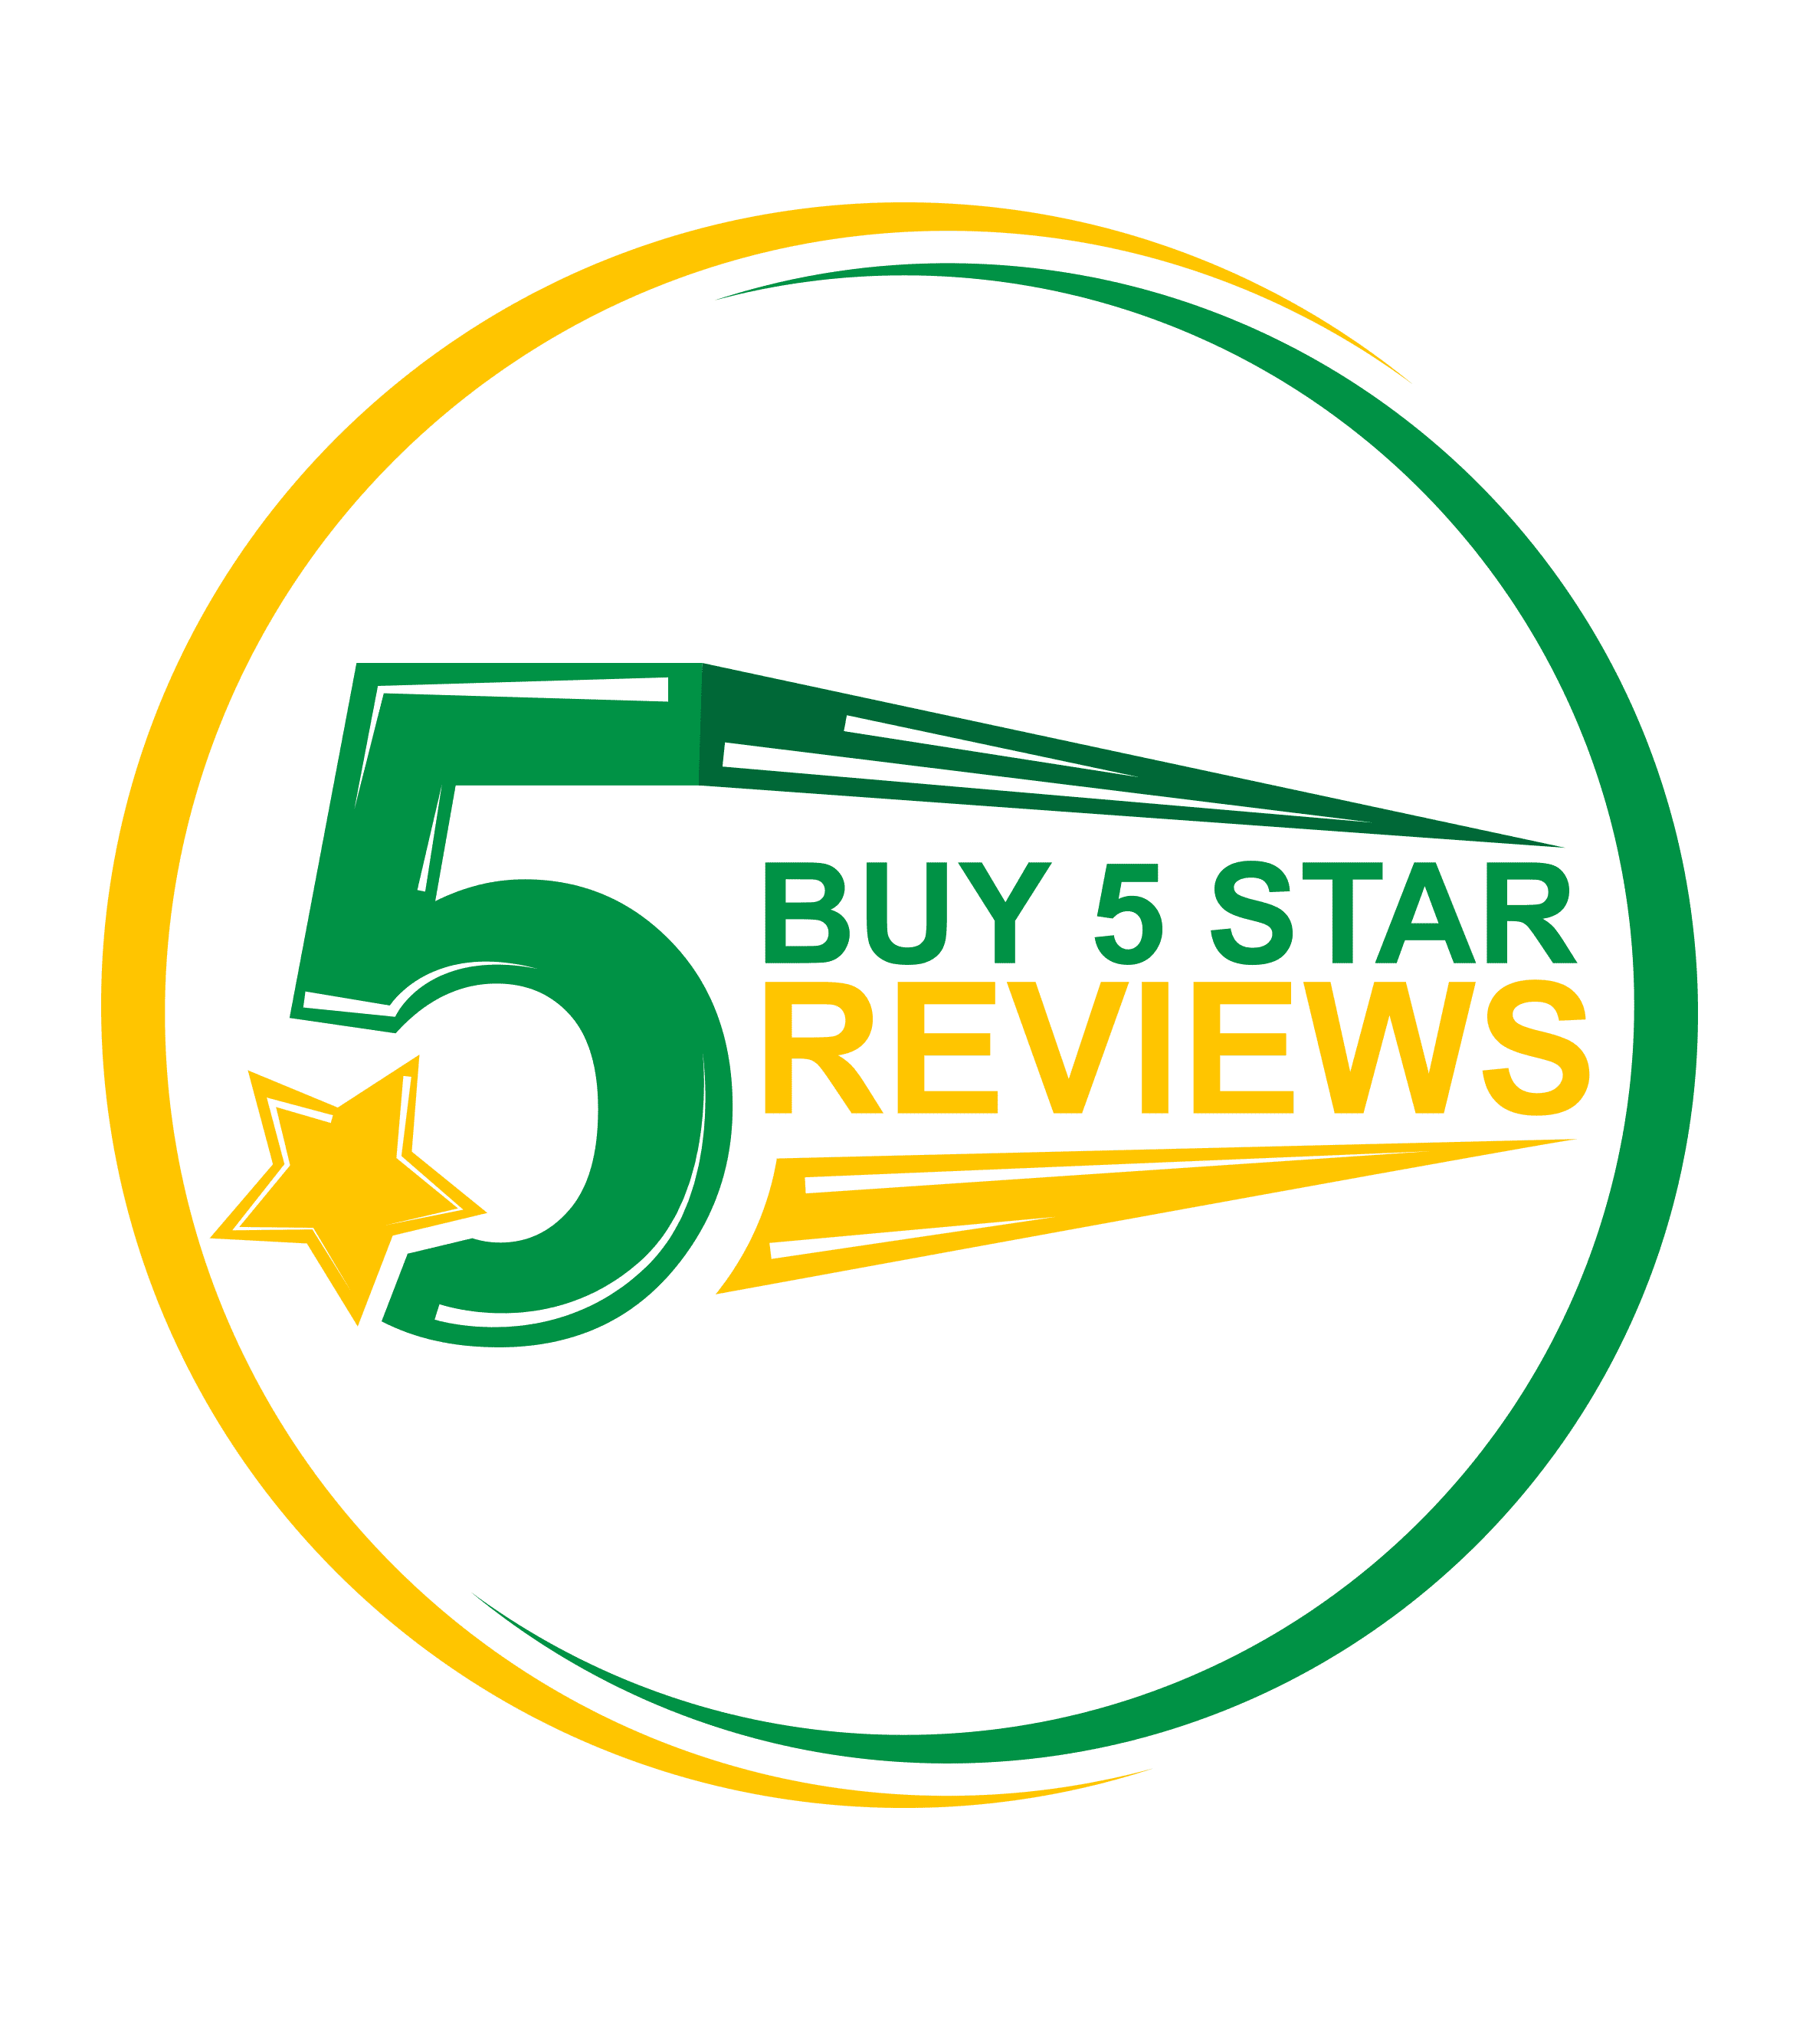 buy 5 star reviews